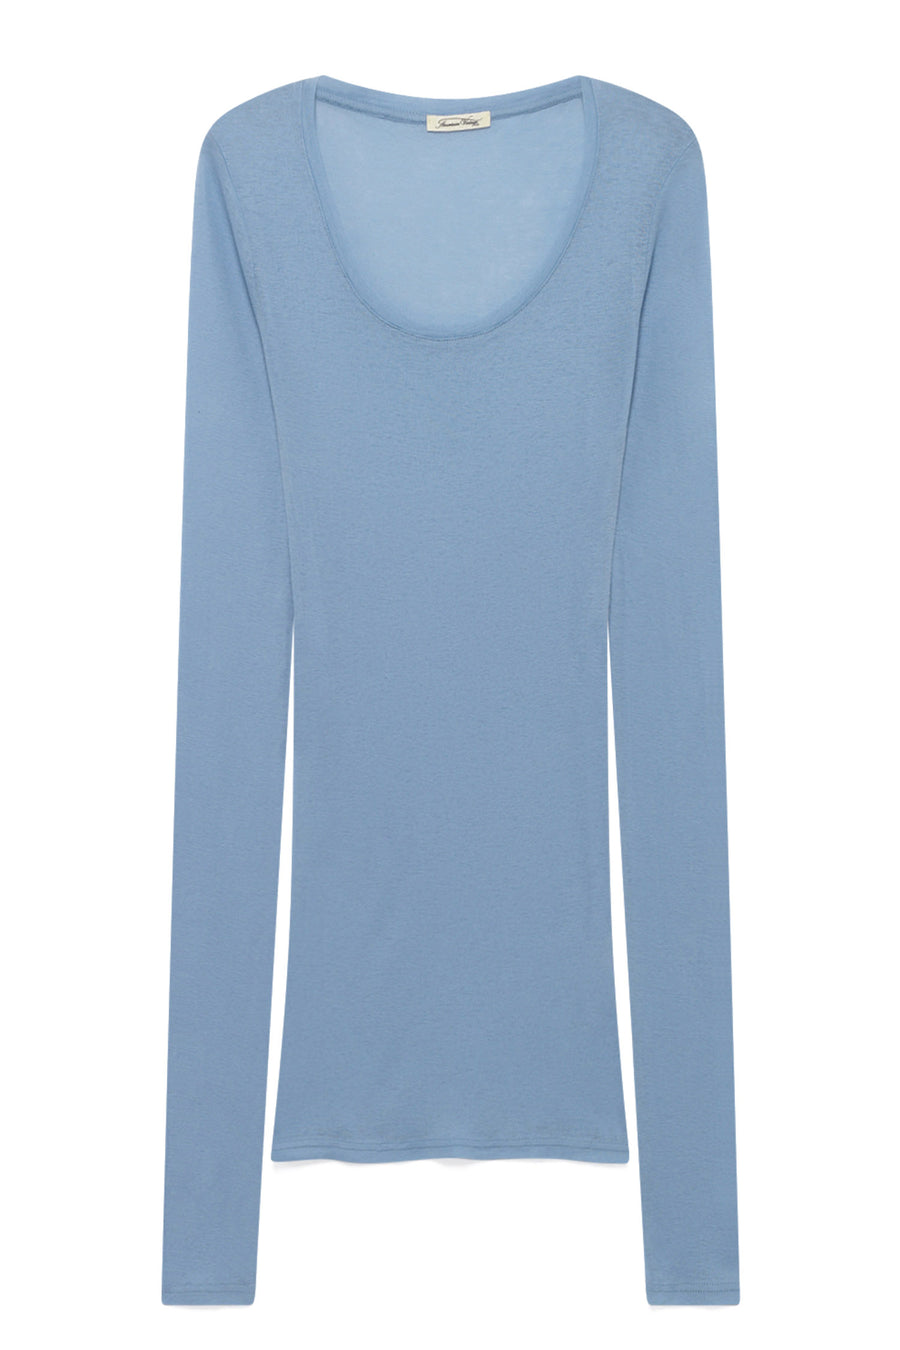 'Massachusetts' Supima Cotton Long-Sleeved T-shirt Ciel - RUE MADAME | BOUTIQUE PARISIENNE